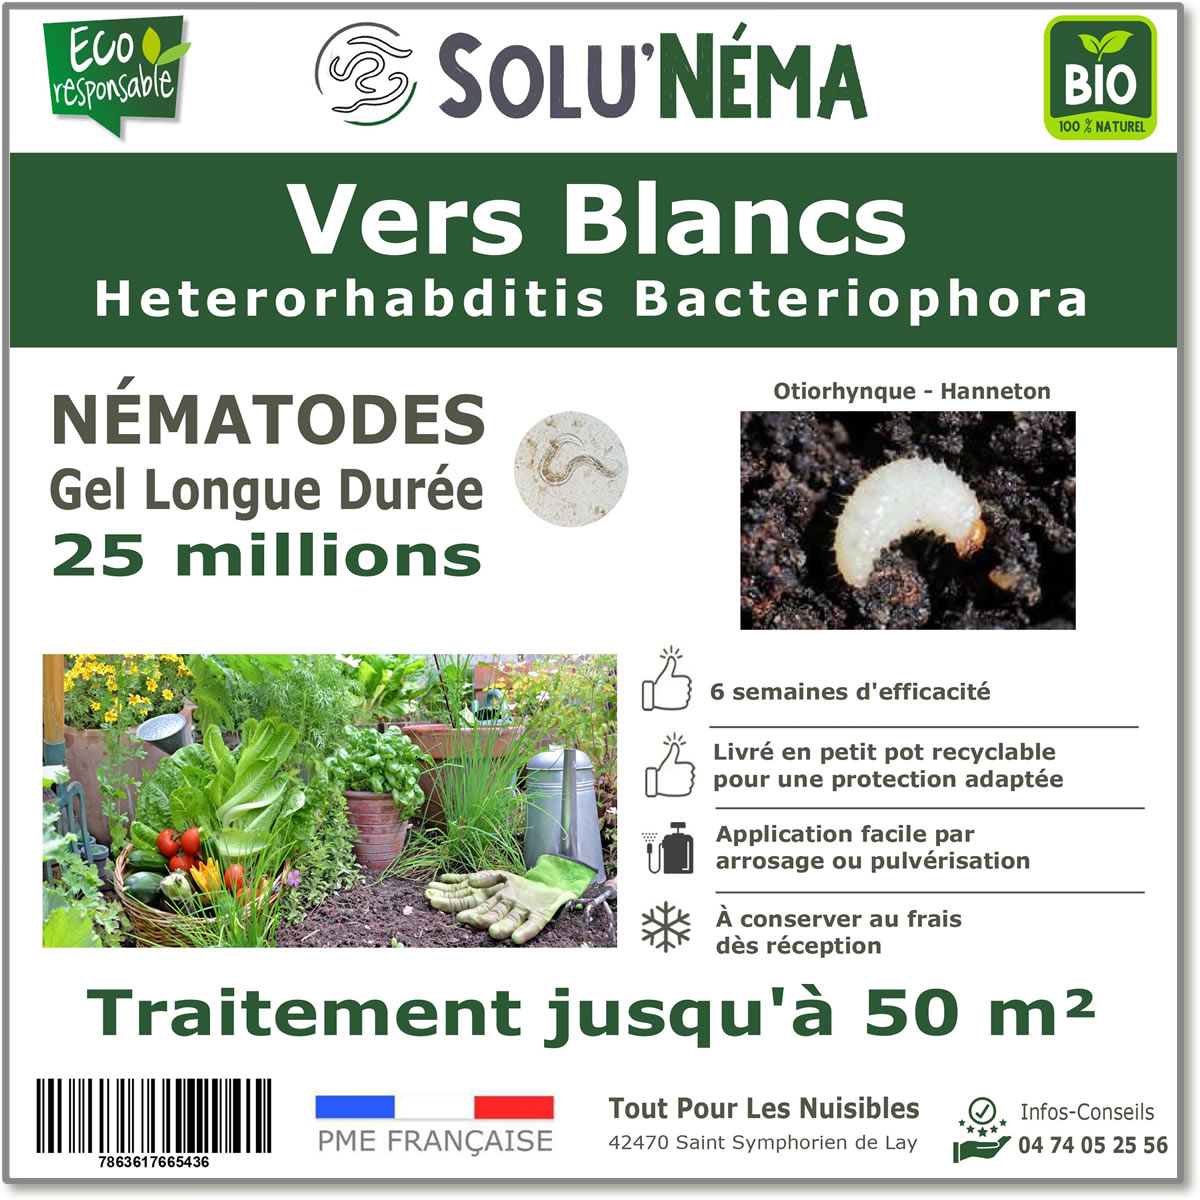 Nématodes (HB) Solunema pour Les vers blancx - otiorhinque - hanneton 25 millions SF